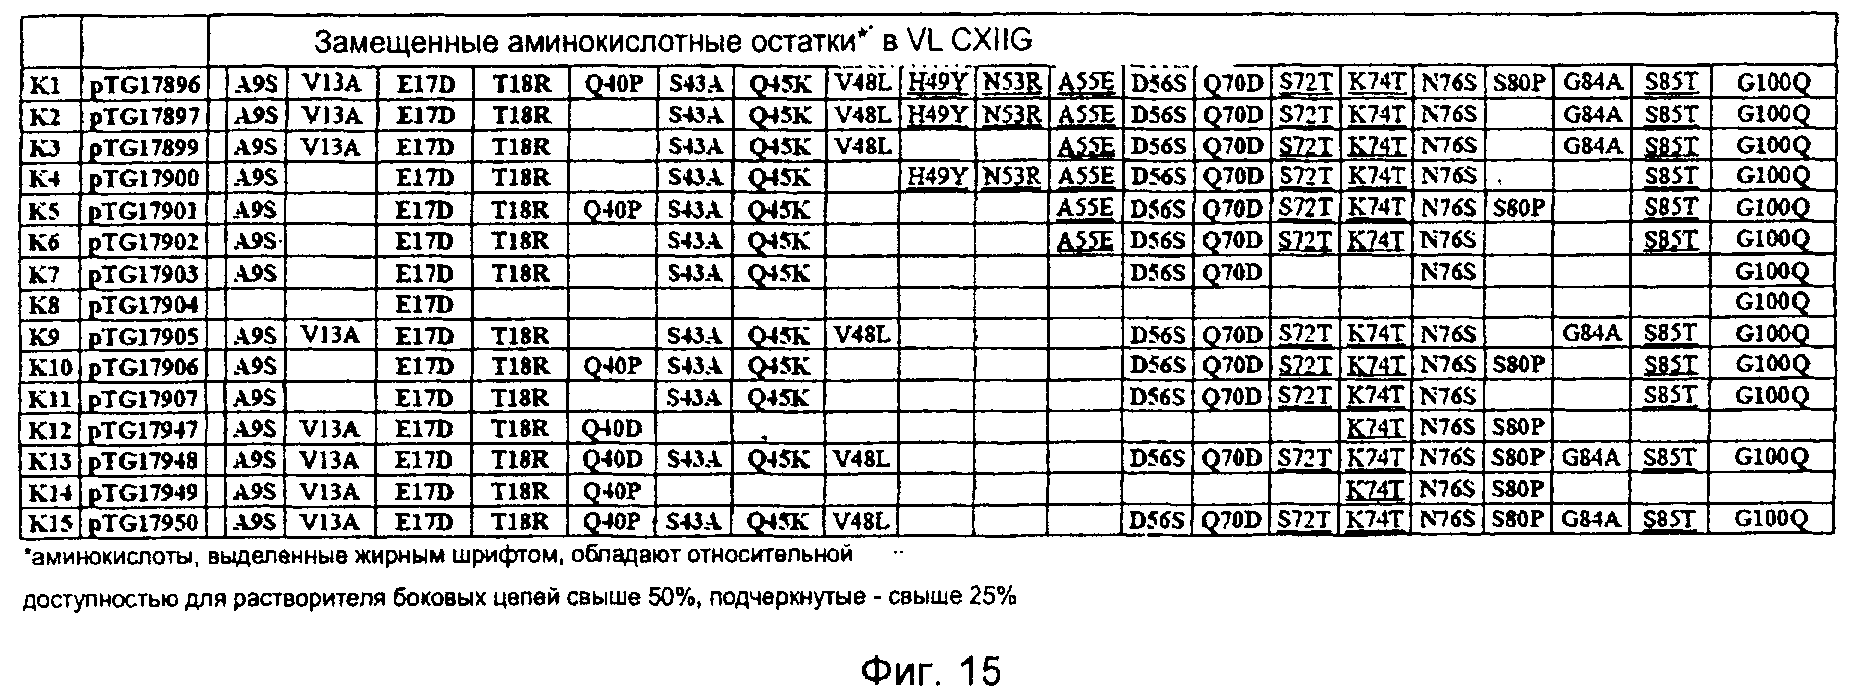 АНТИТЕЛО ПРОТИВ CSF-1R